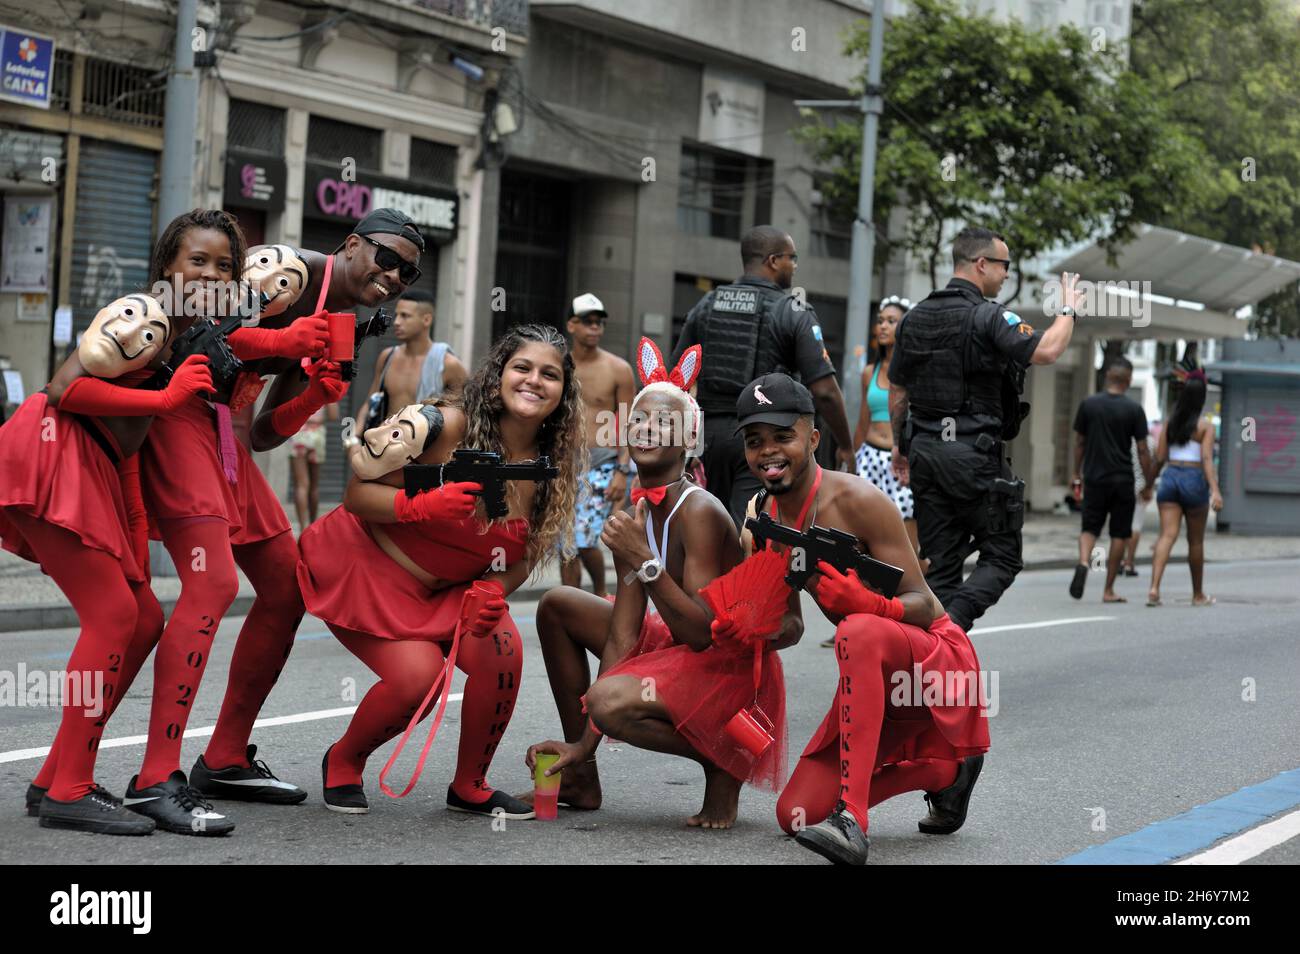 Brasile – 22 febbraio 2020: I festaioli travestiti da personaggi della serie Money Heist prendono parte alle celebrazioni del carnevale che si tengono nel centro di Rio de Janeiro. Foto Stock